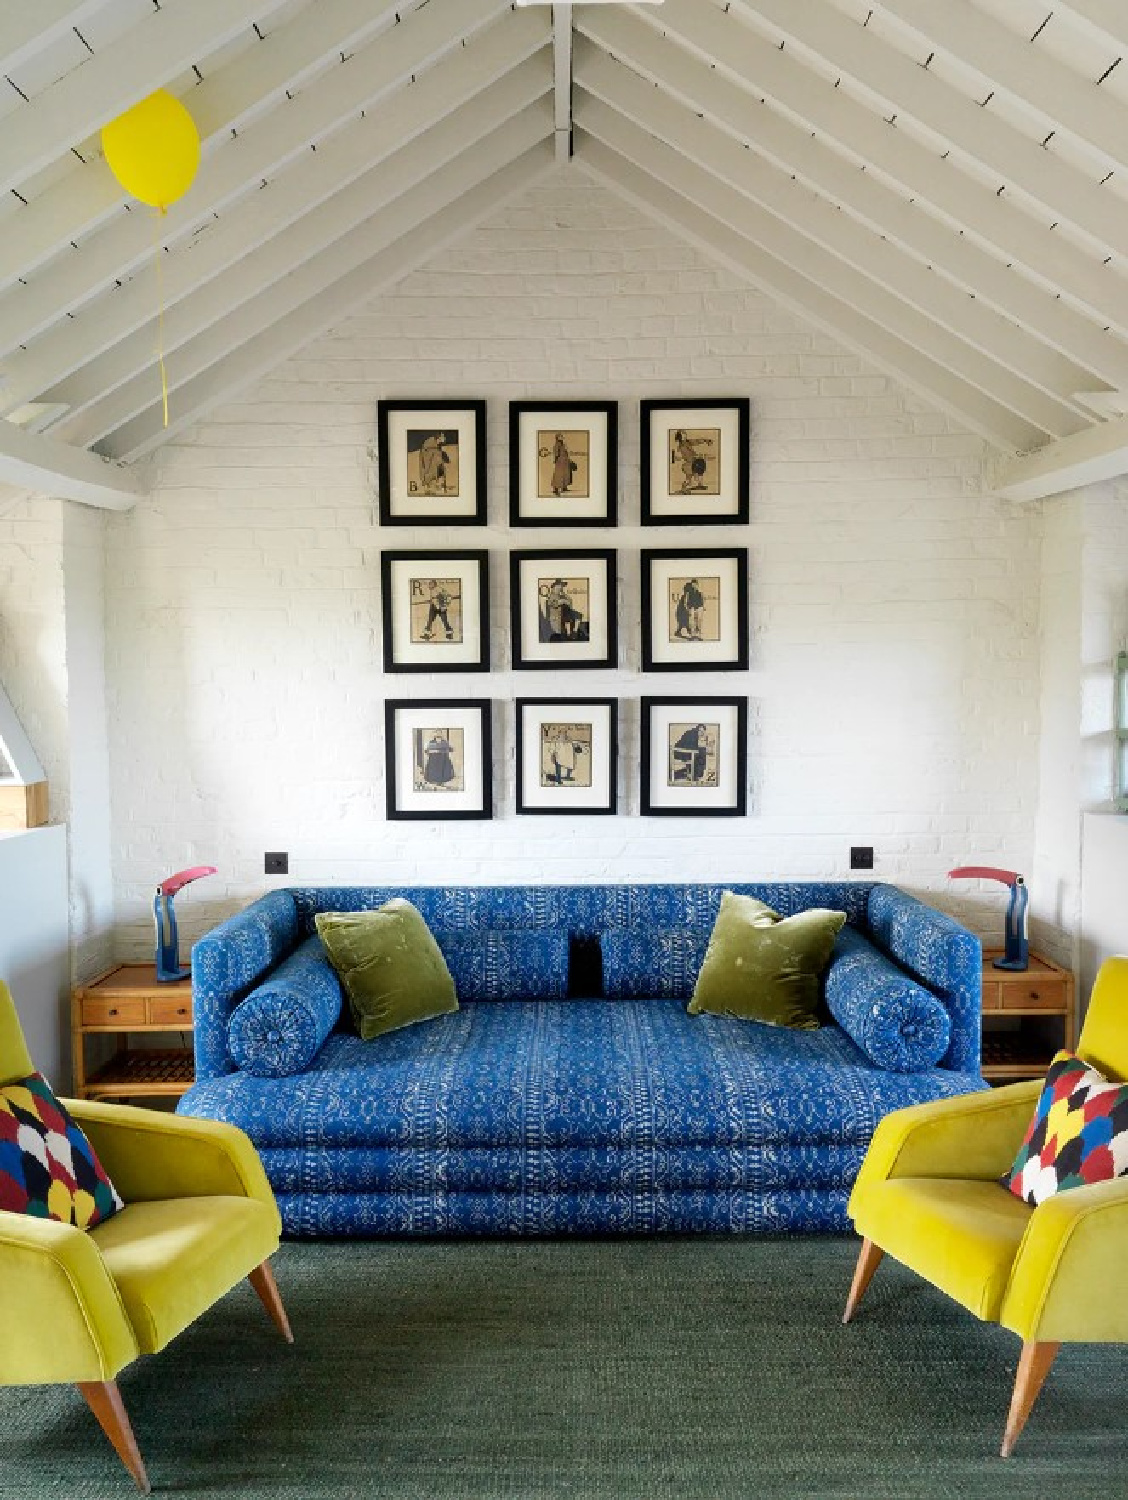 Sofá azul brilhante e cadeiras amarelas em um espaço de Beata Heuman - foto de Simon Brown.